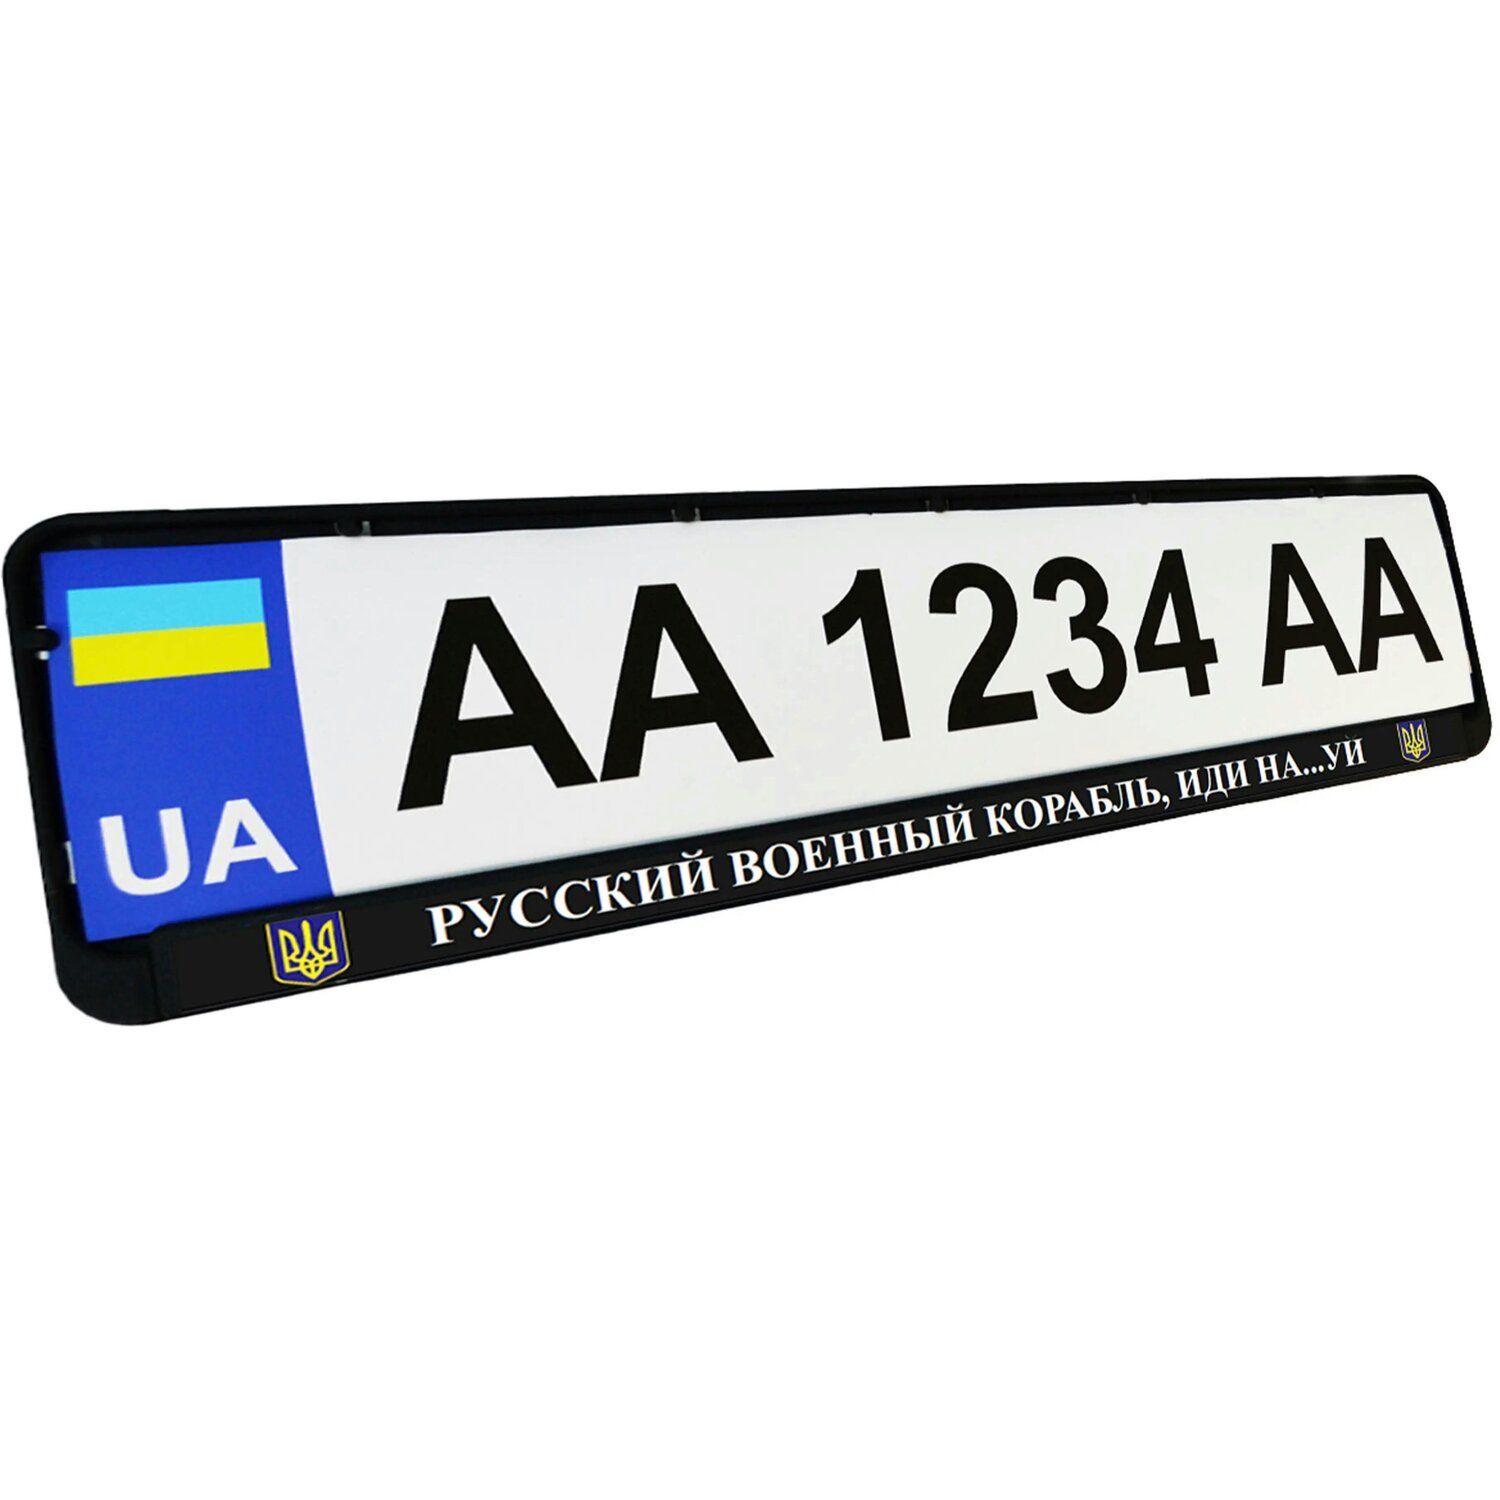 Рамка номерного знака Poputchik пластиковая патриотическая Русский военный корабль, иди на…уй (24-266-IS) фото 